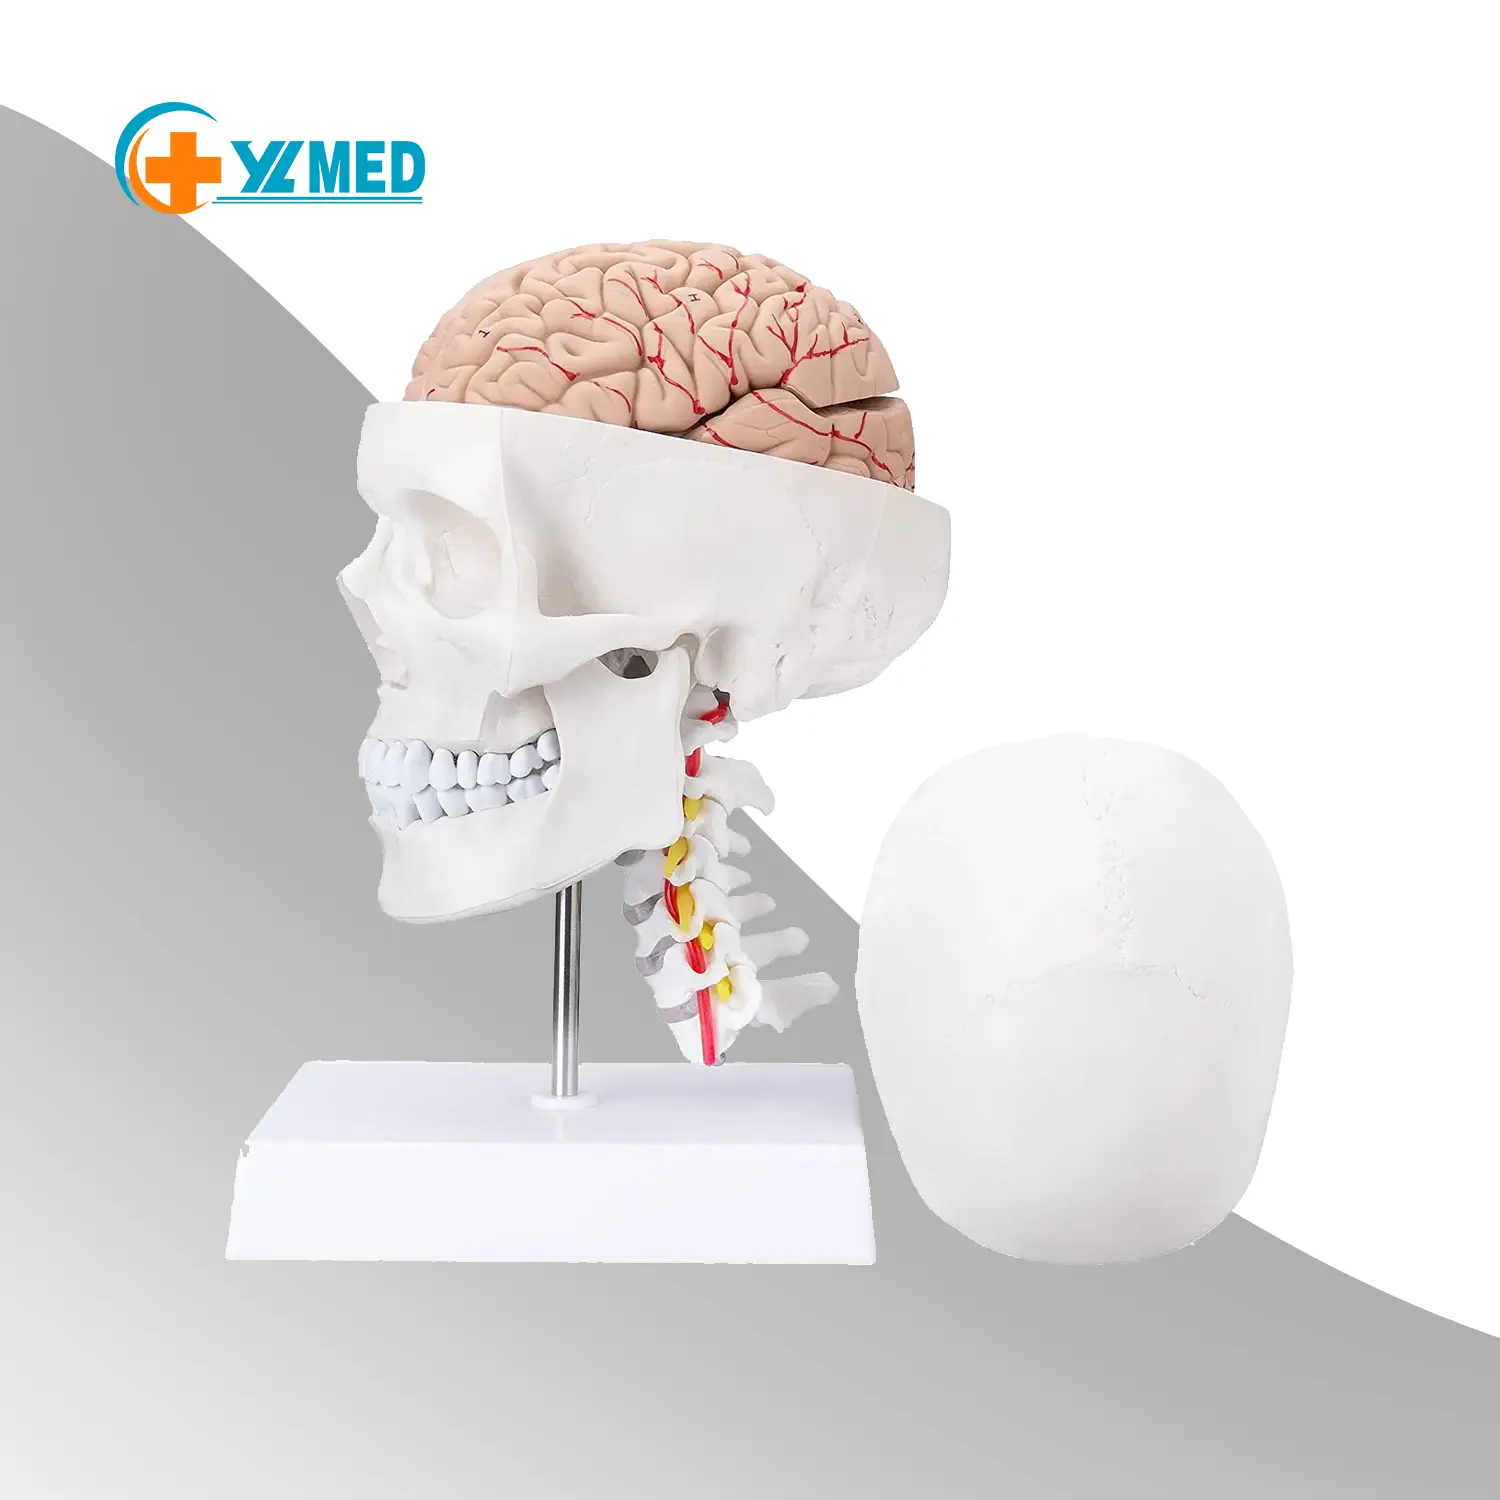 Modelos anatômicos do crânio humano e cérebro equidistante da coluna cervical e da base do crânio para neuroanatomia médica